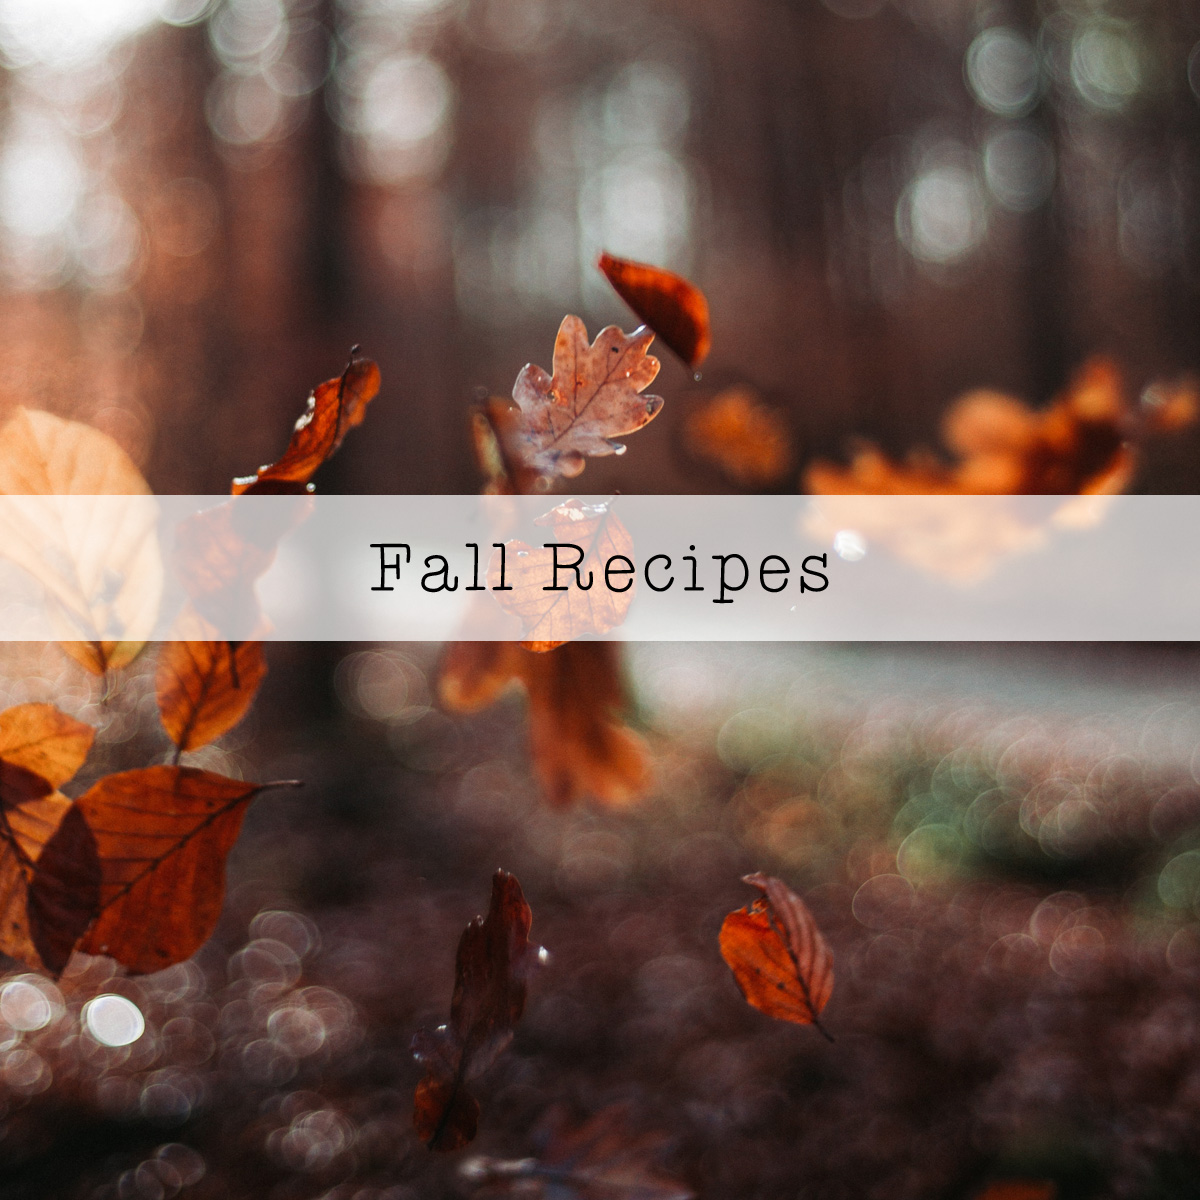 Fall Holiday Food Recipes